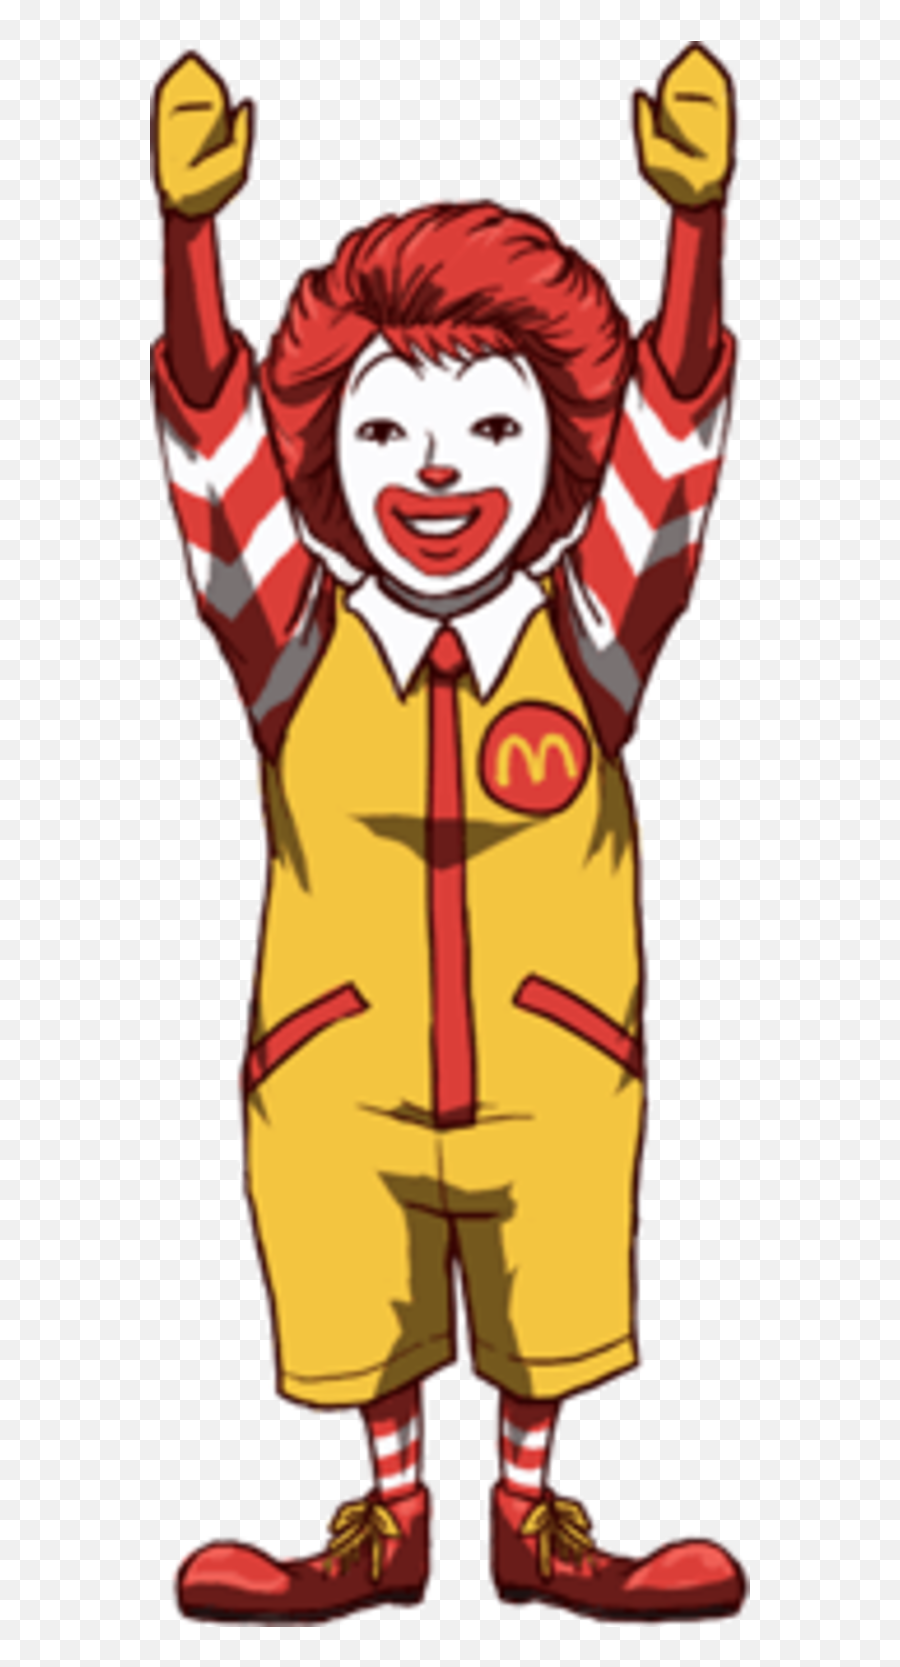 Mcdonalds Clipart Ronald Mcdonald - Ronald Mcdonald Clipart Emoji,Ronald Mcdonald Emoji